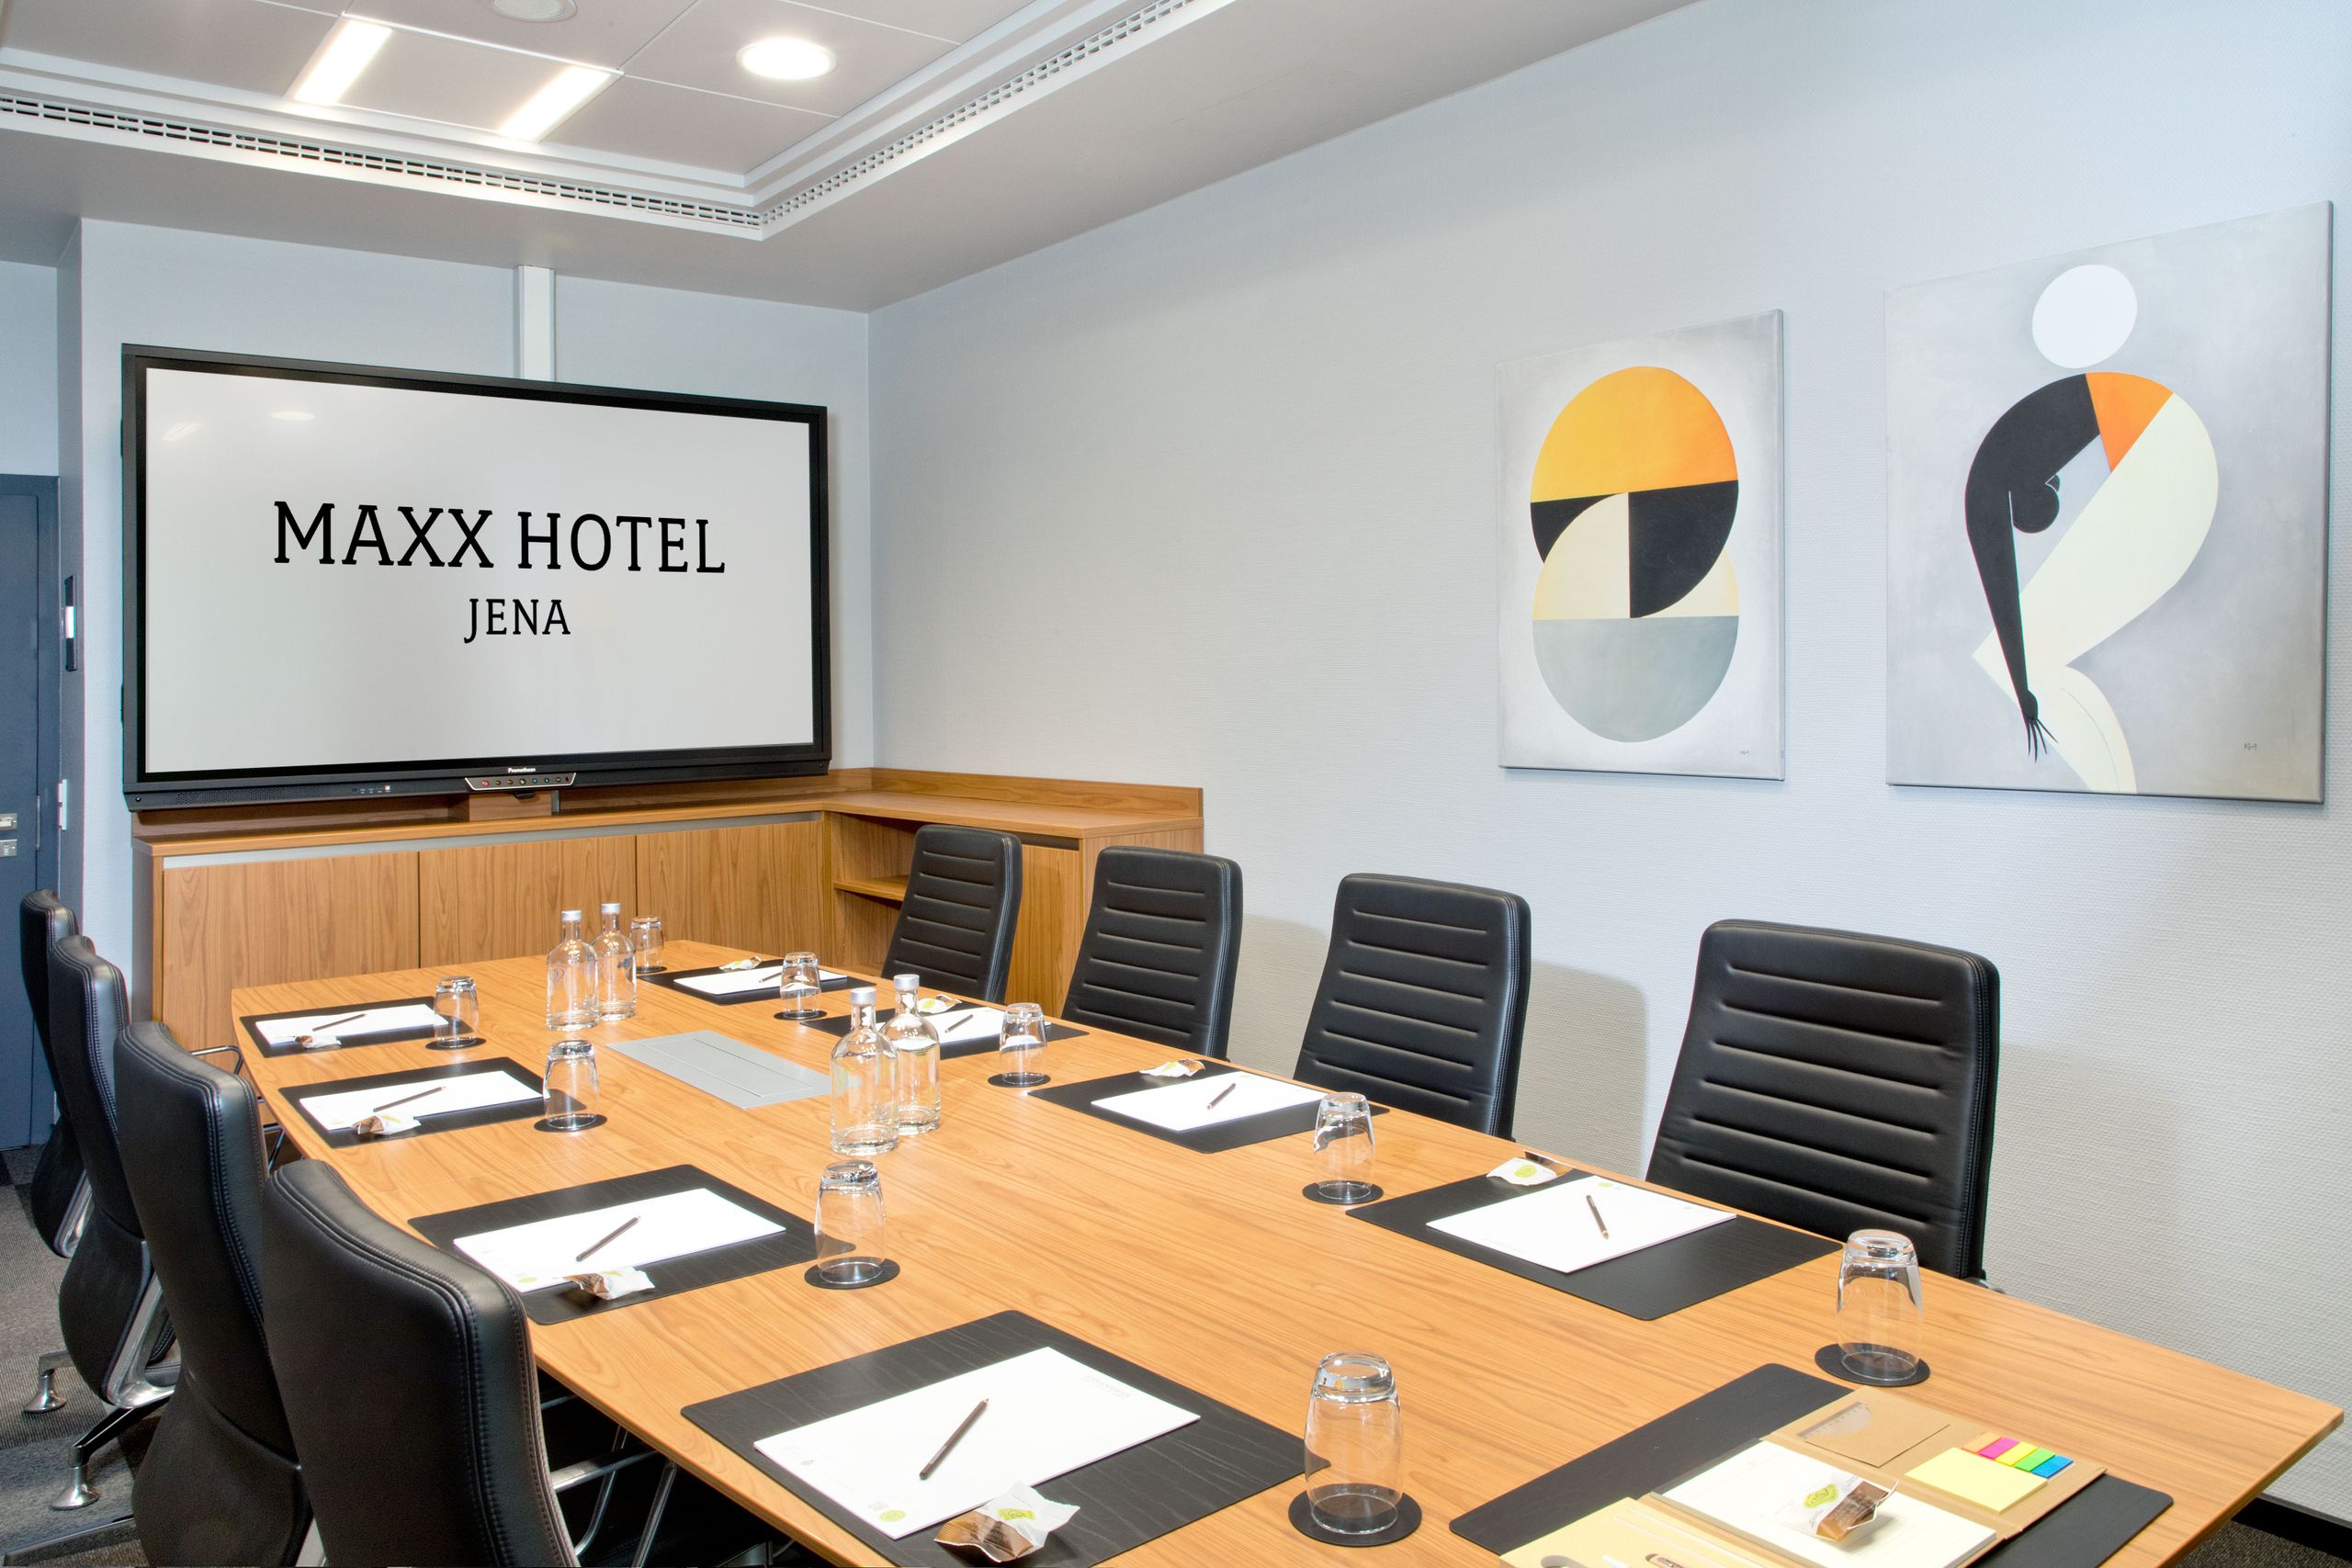 Maxx Hotel Jena - Møde